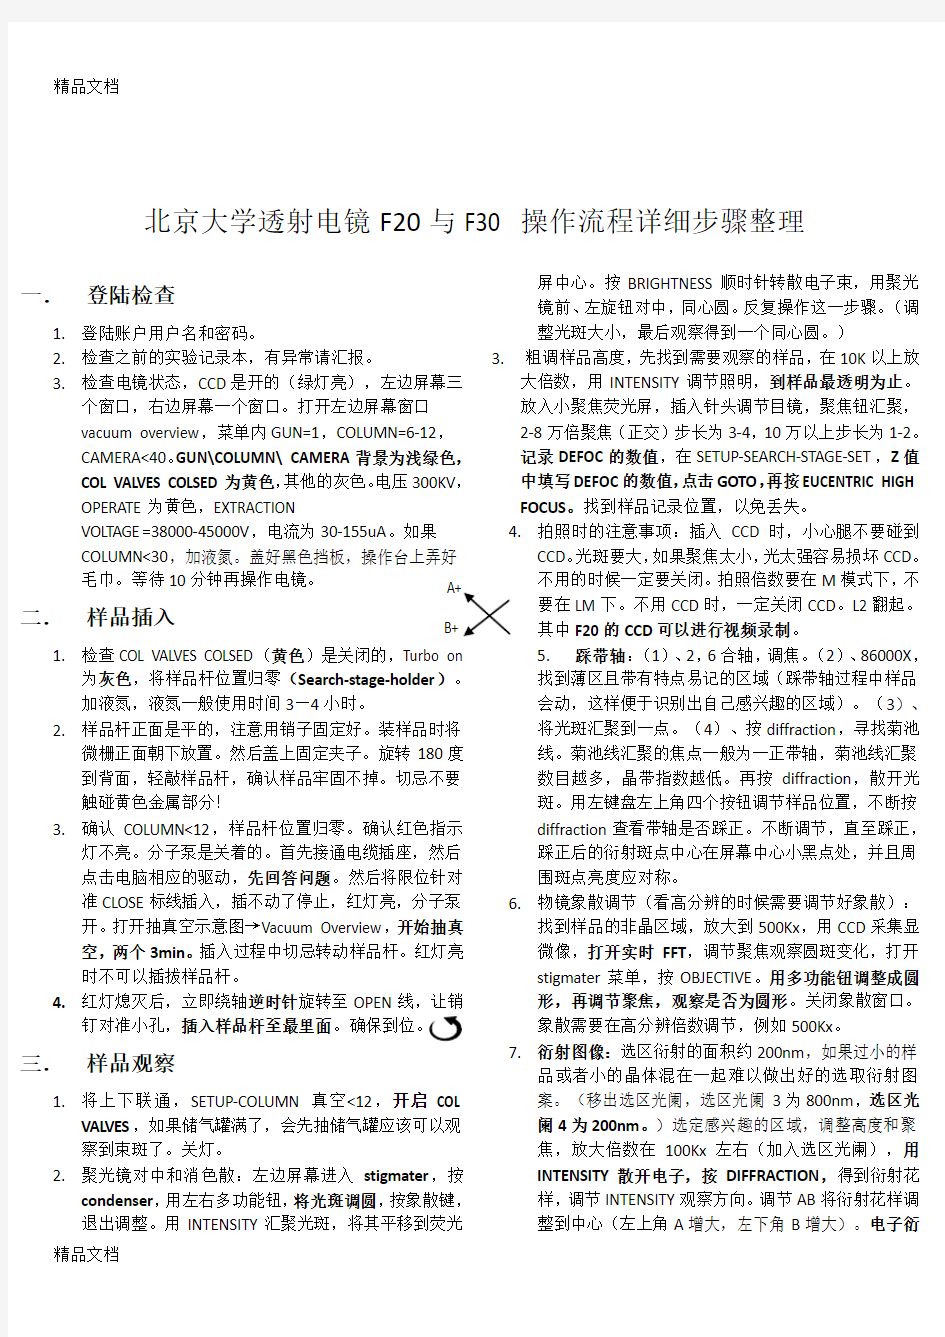 最新北京大学透射电镜F20与F30-操作流程详细步骤整理--邓玉豪-1220